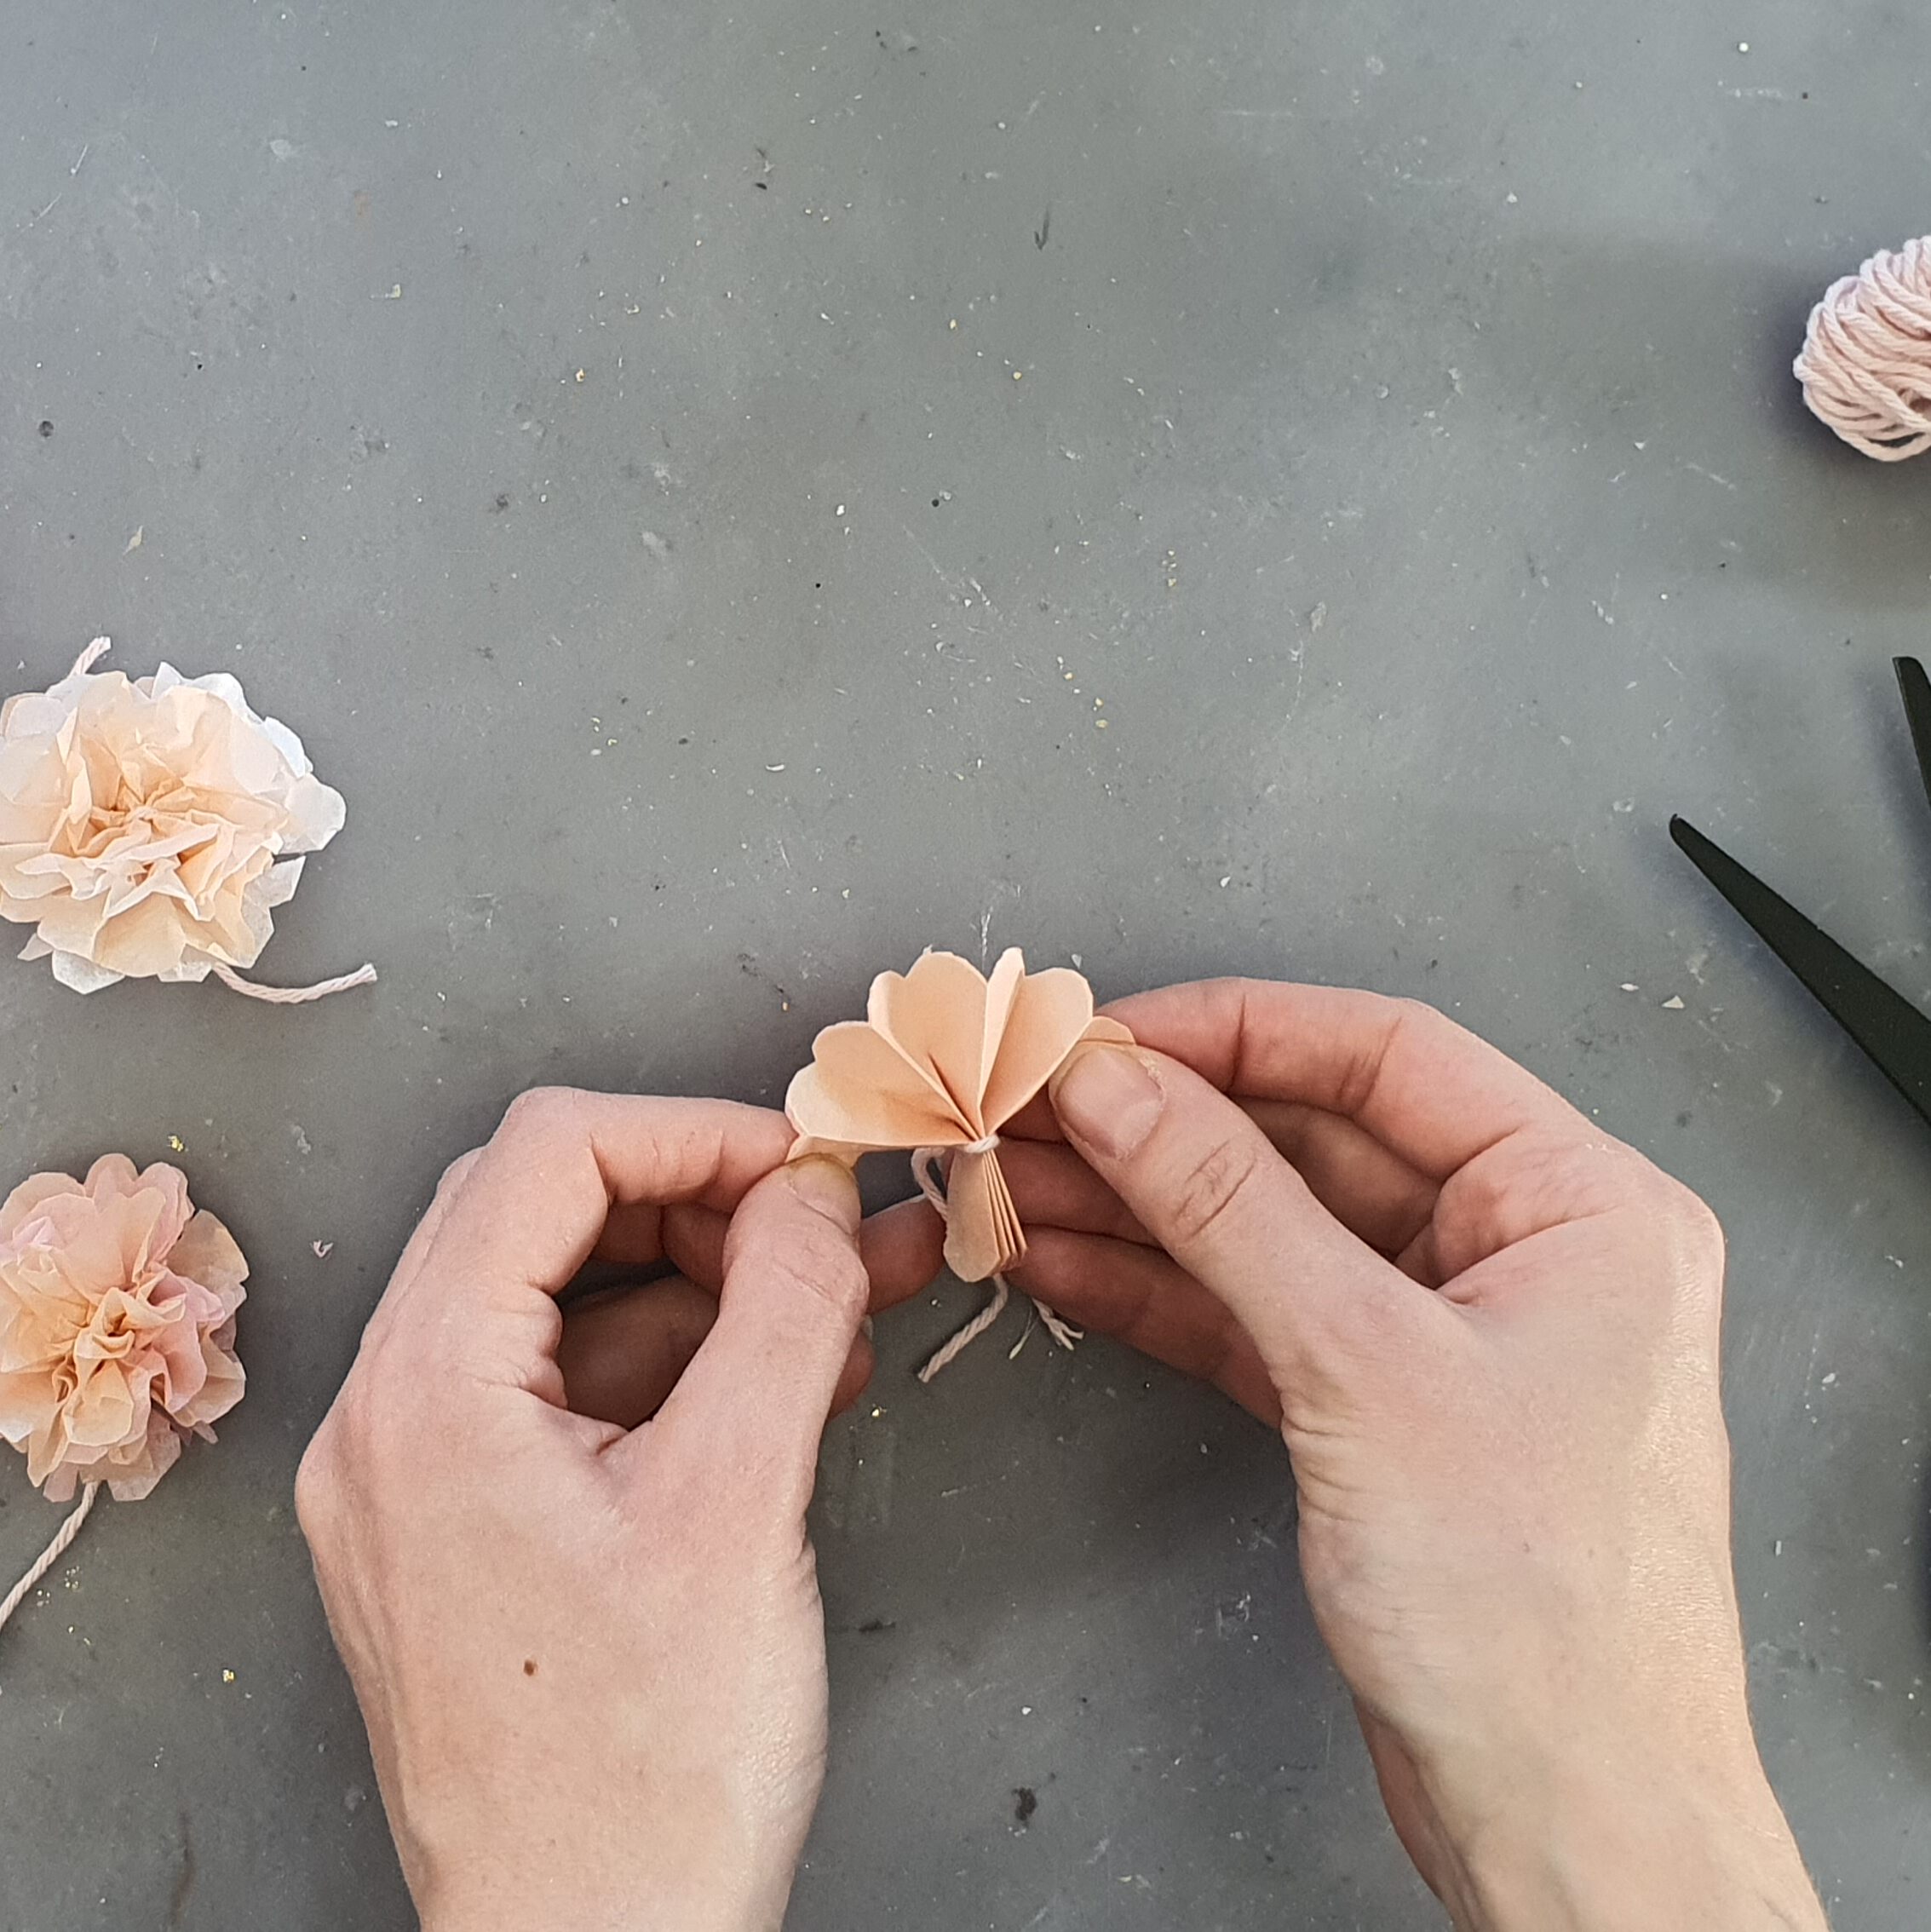 Türkranz mit Blumen aus Seidenpapier basteln Schritt 4: Papier auffächern